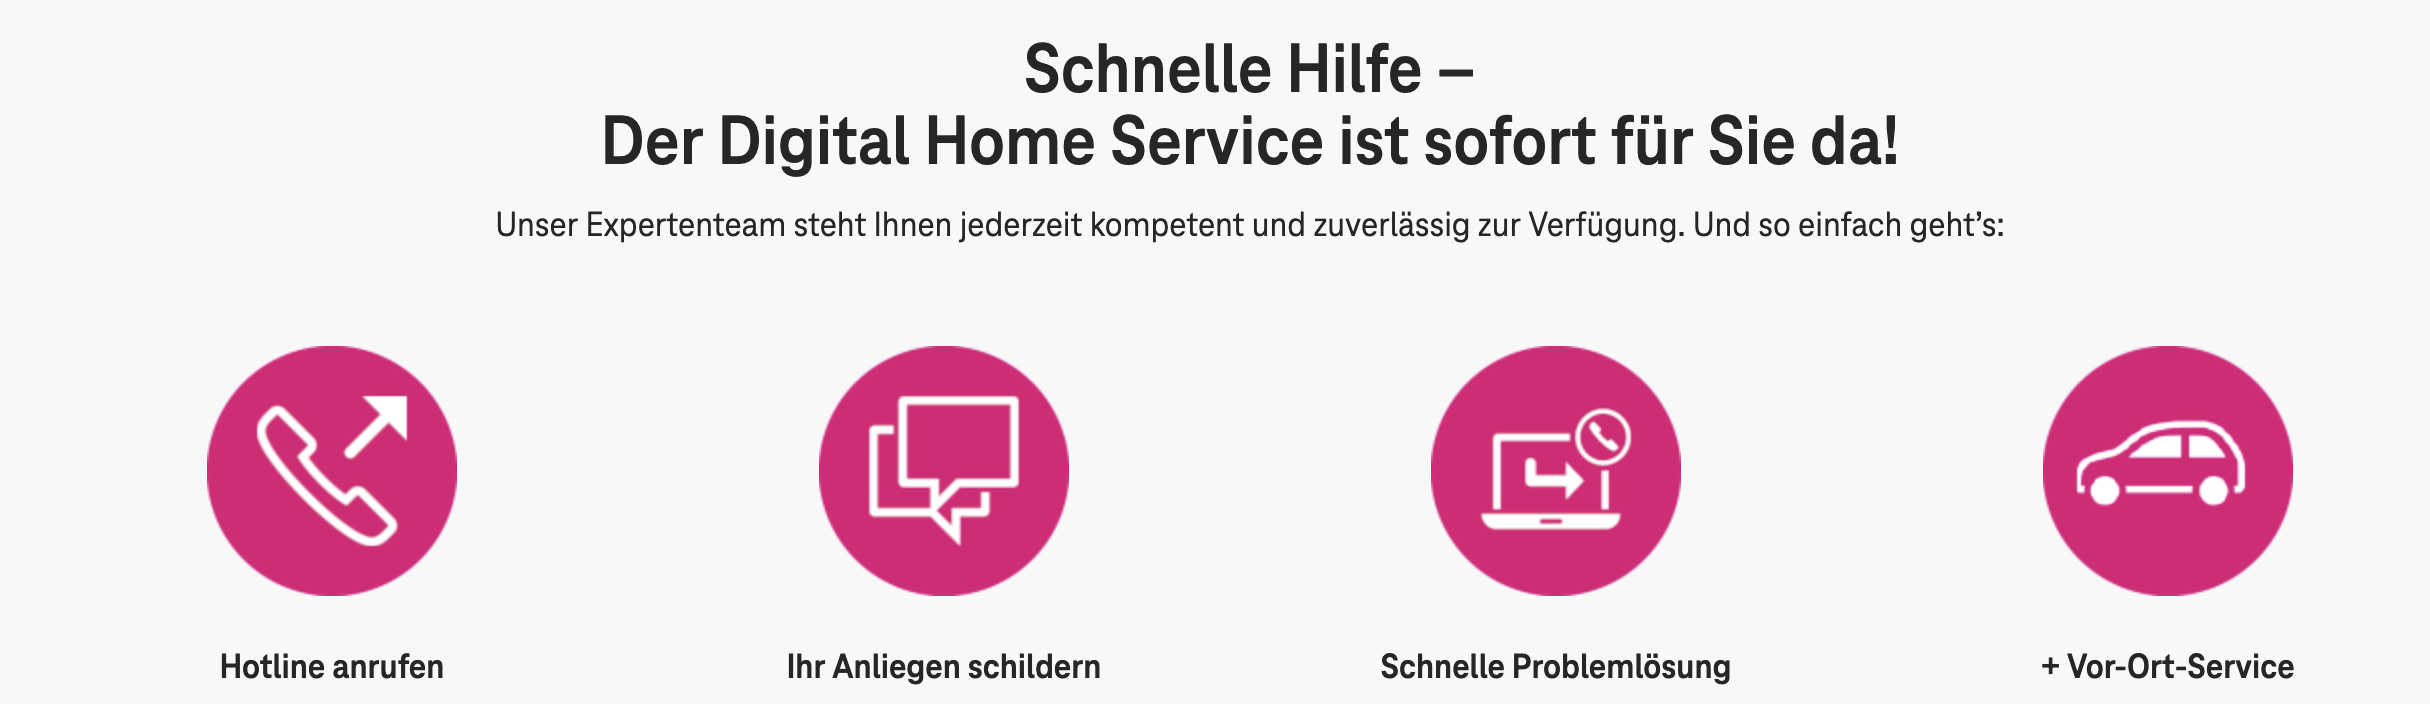 Screenshot von dem Angebot der Telekom mit den vier Schritten Hotline anrufen - anliegen schildern - schnelle Problemlösung - Vor-Ort-Service